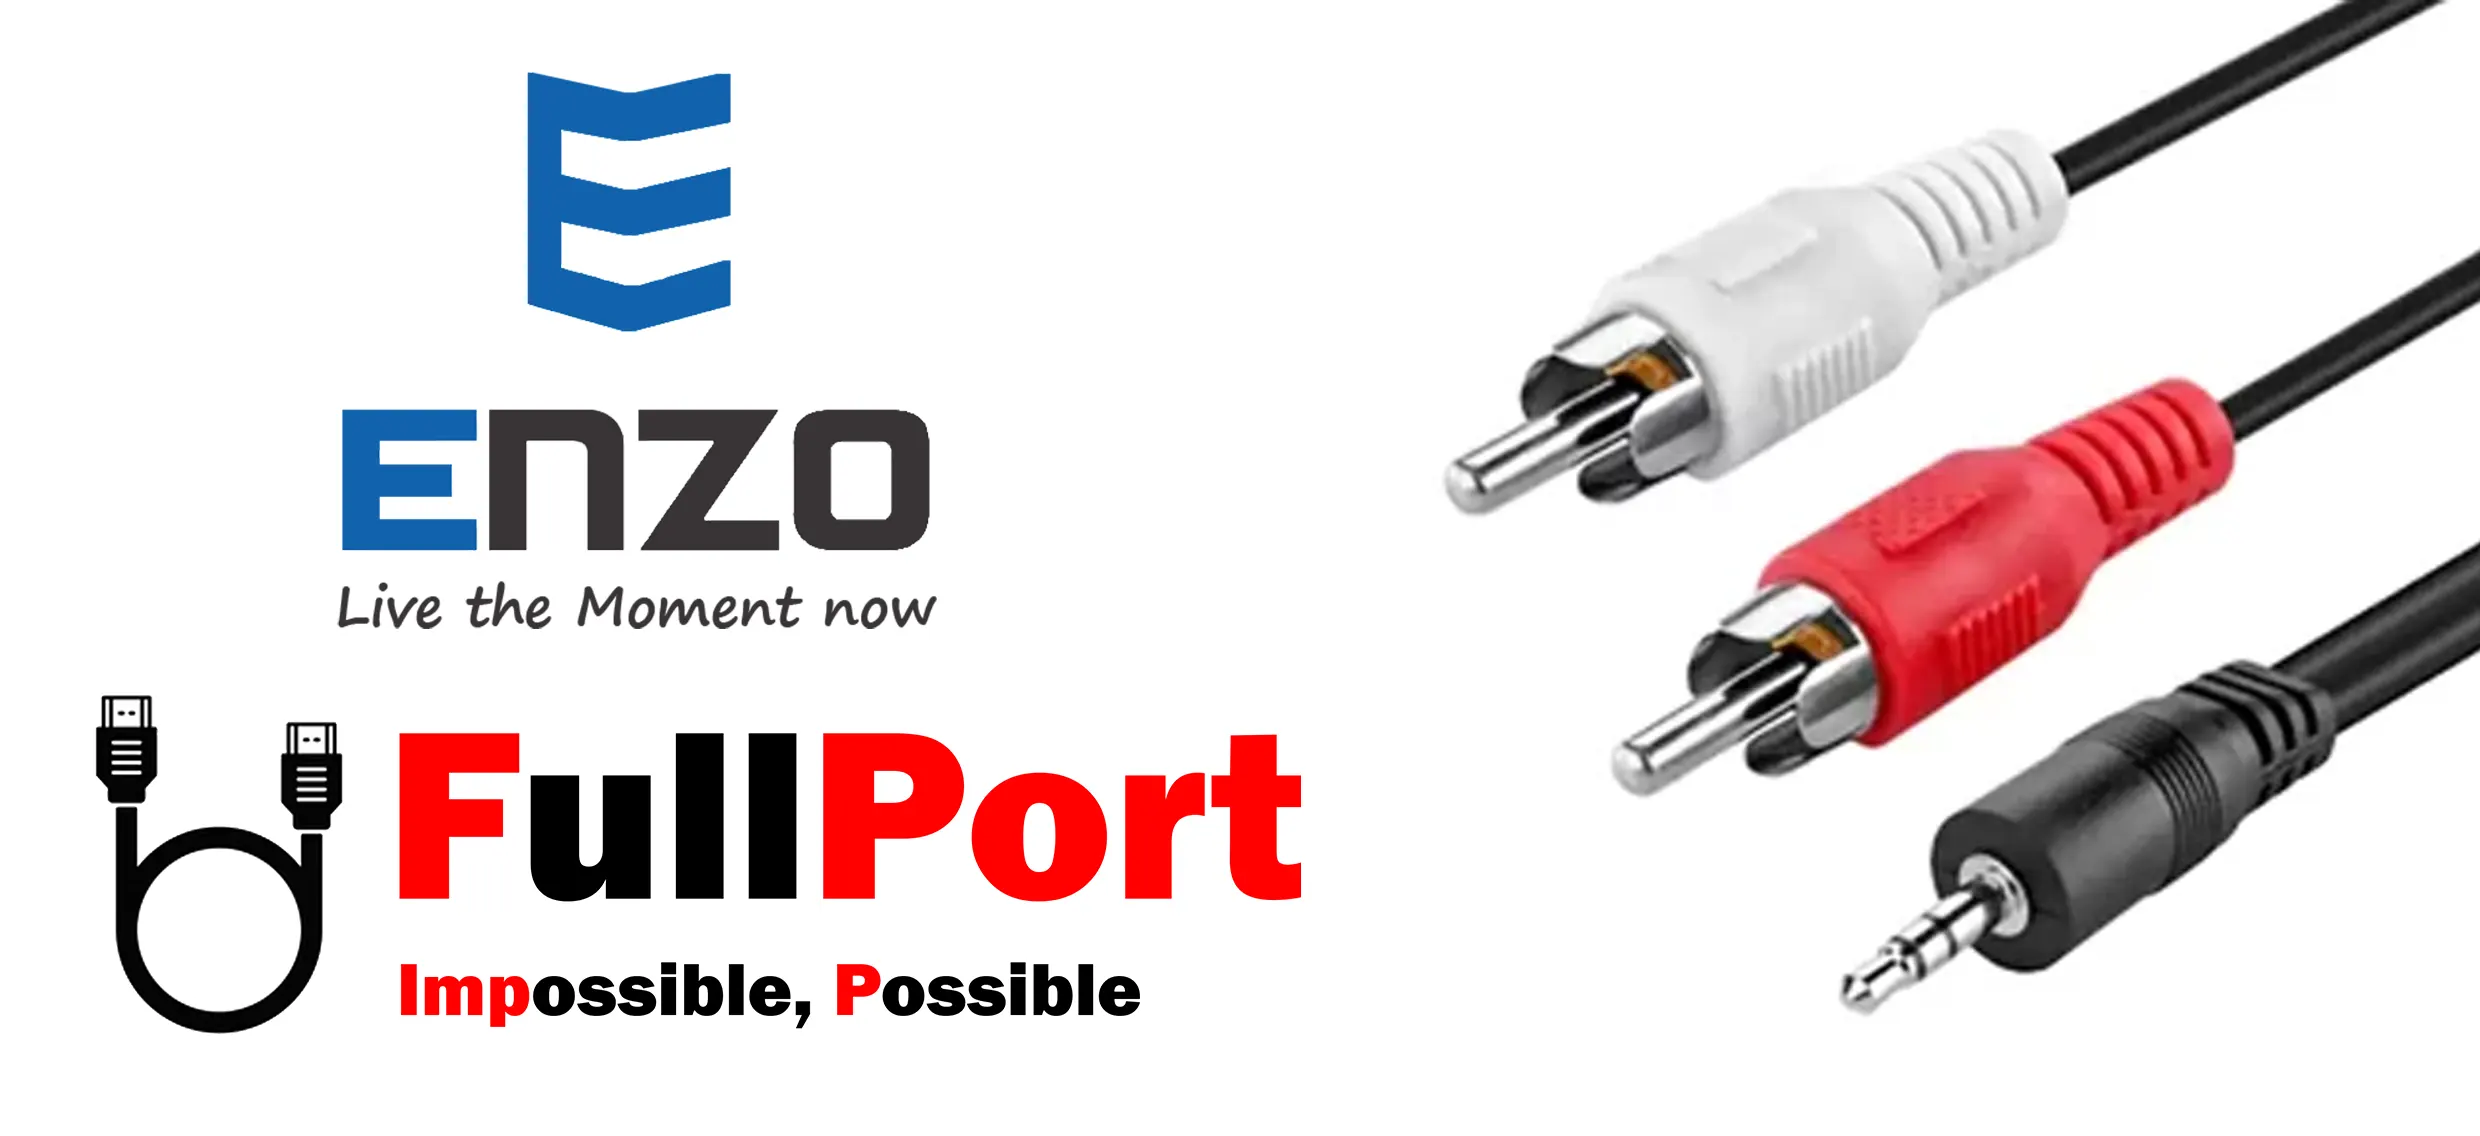 خرید کابل صدا 1 به 2 انزو | ENZO طول 1.5 متر یا معادل 150 سانتیمتر یا 150CM از فروشگاه اینترنتی فول پورت